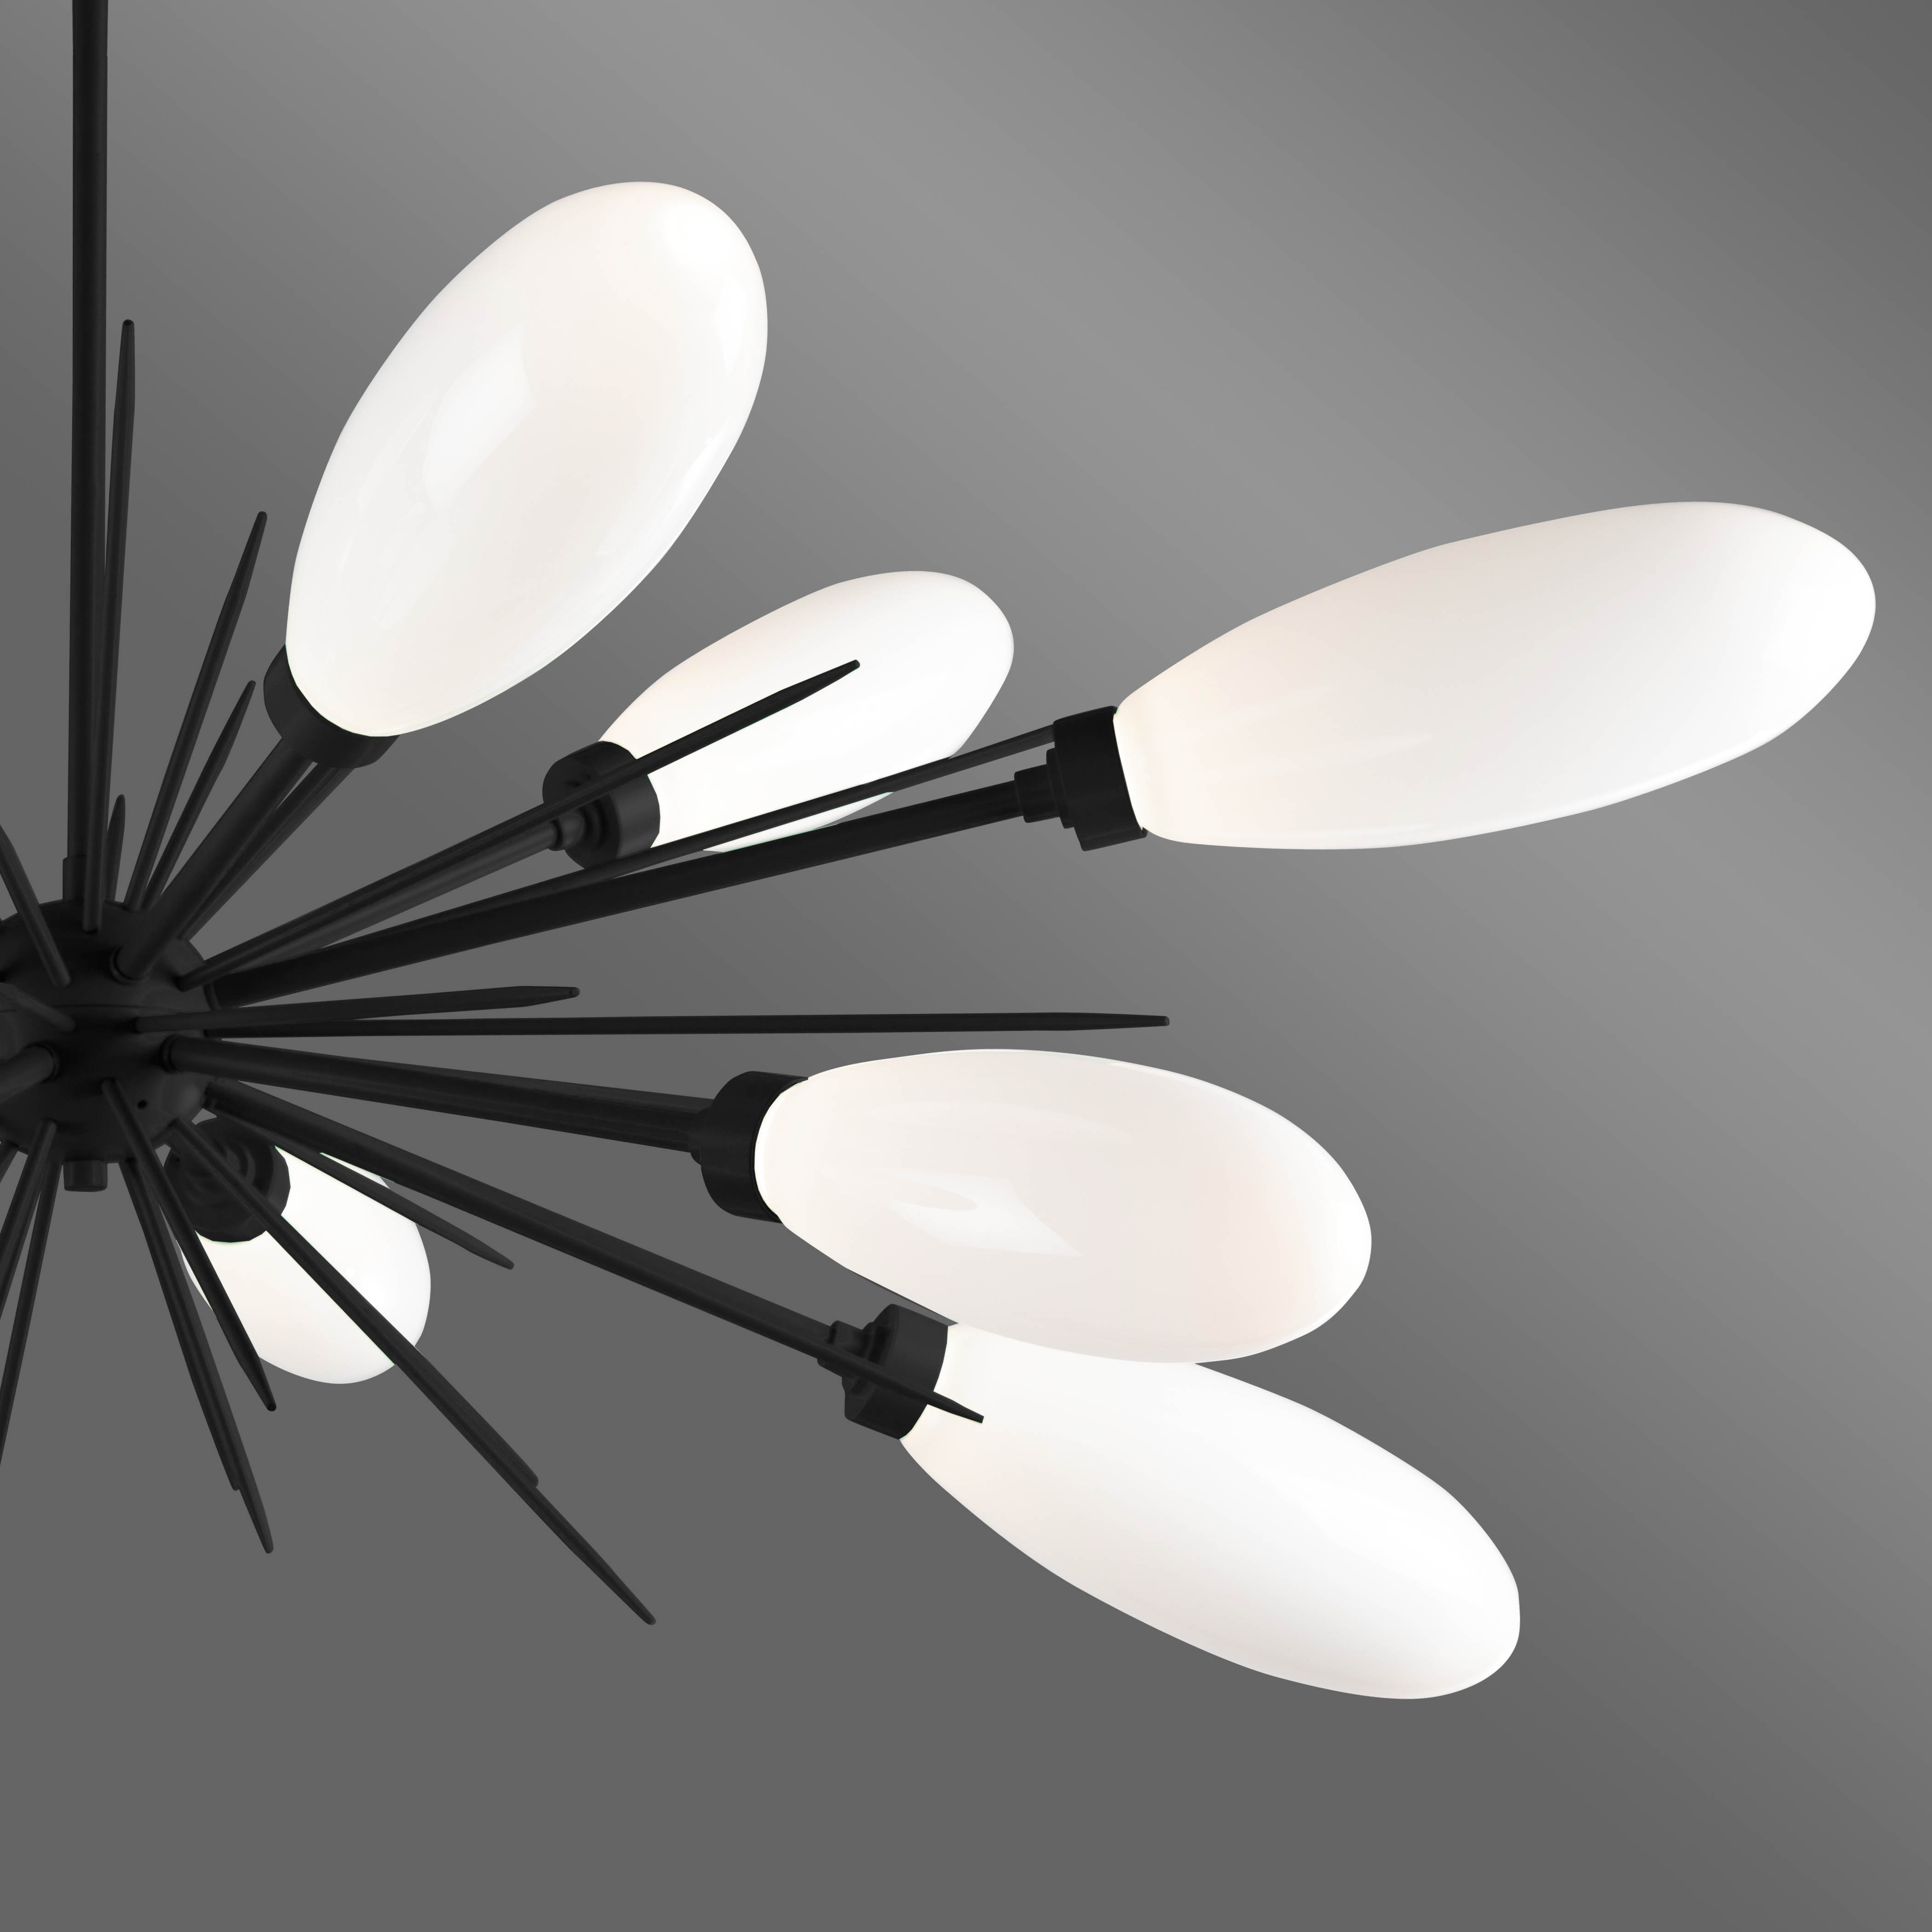 Hammerton Studio Fiori starburst chandelier with matte black finish